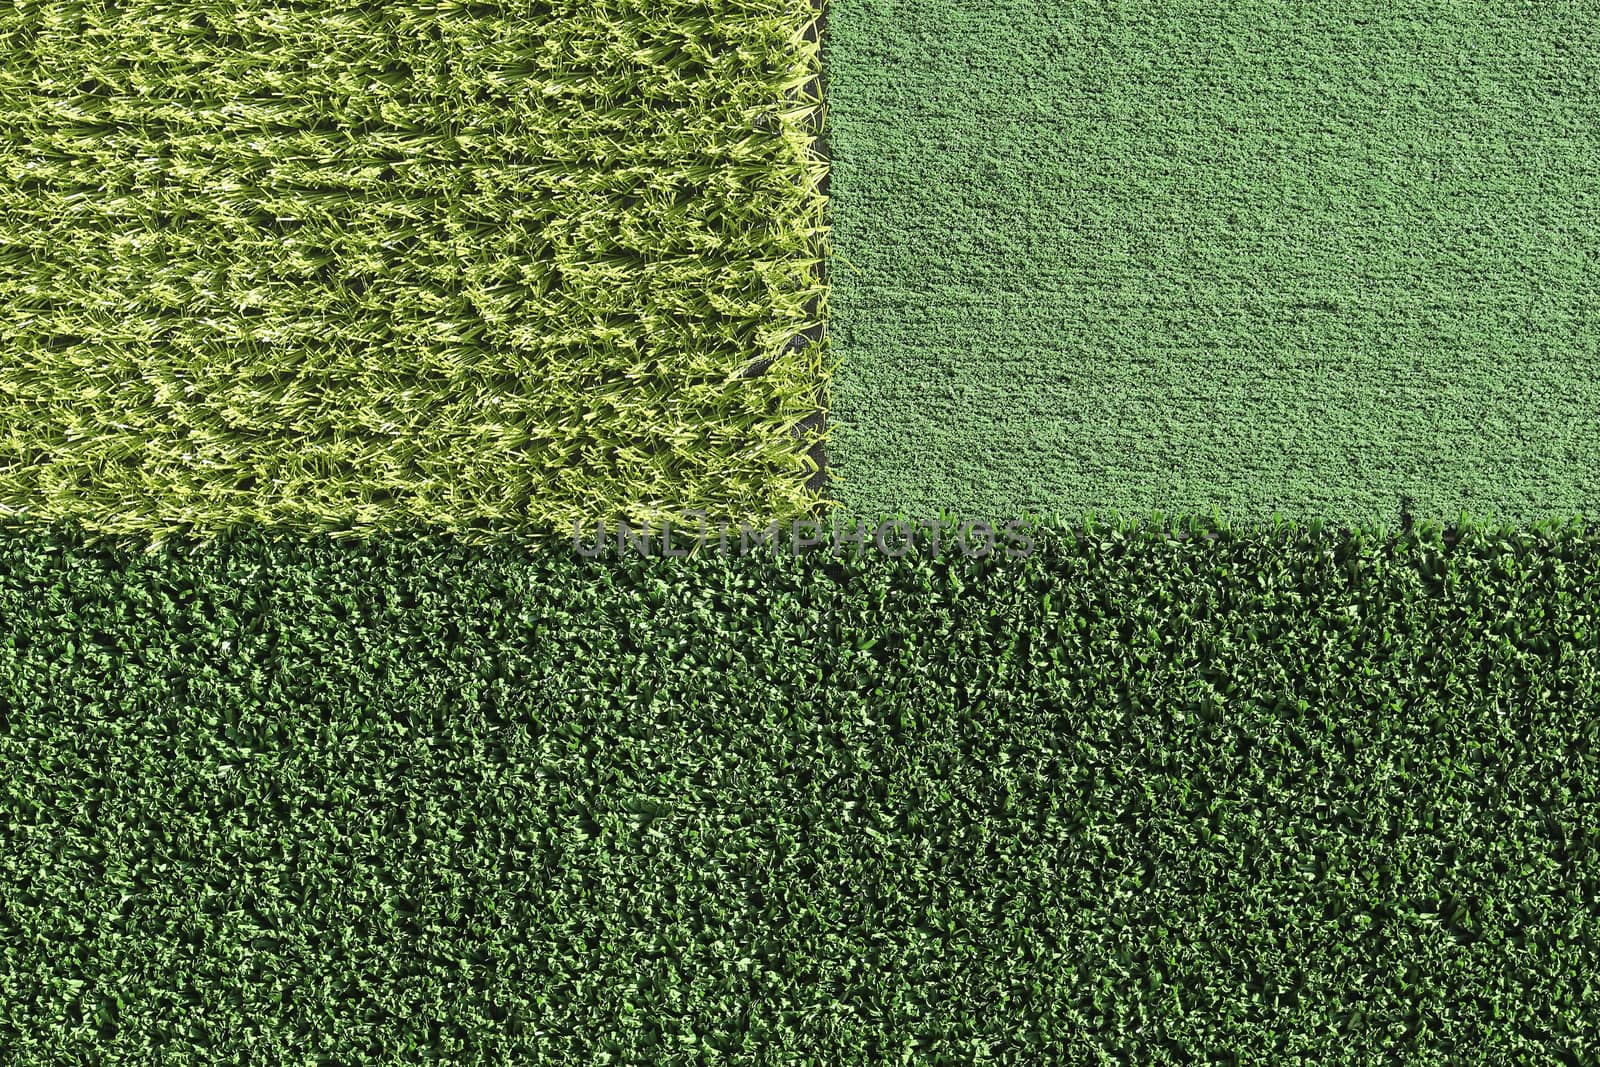 Artificial green Grass background